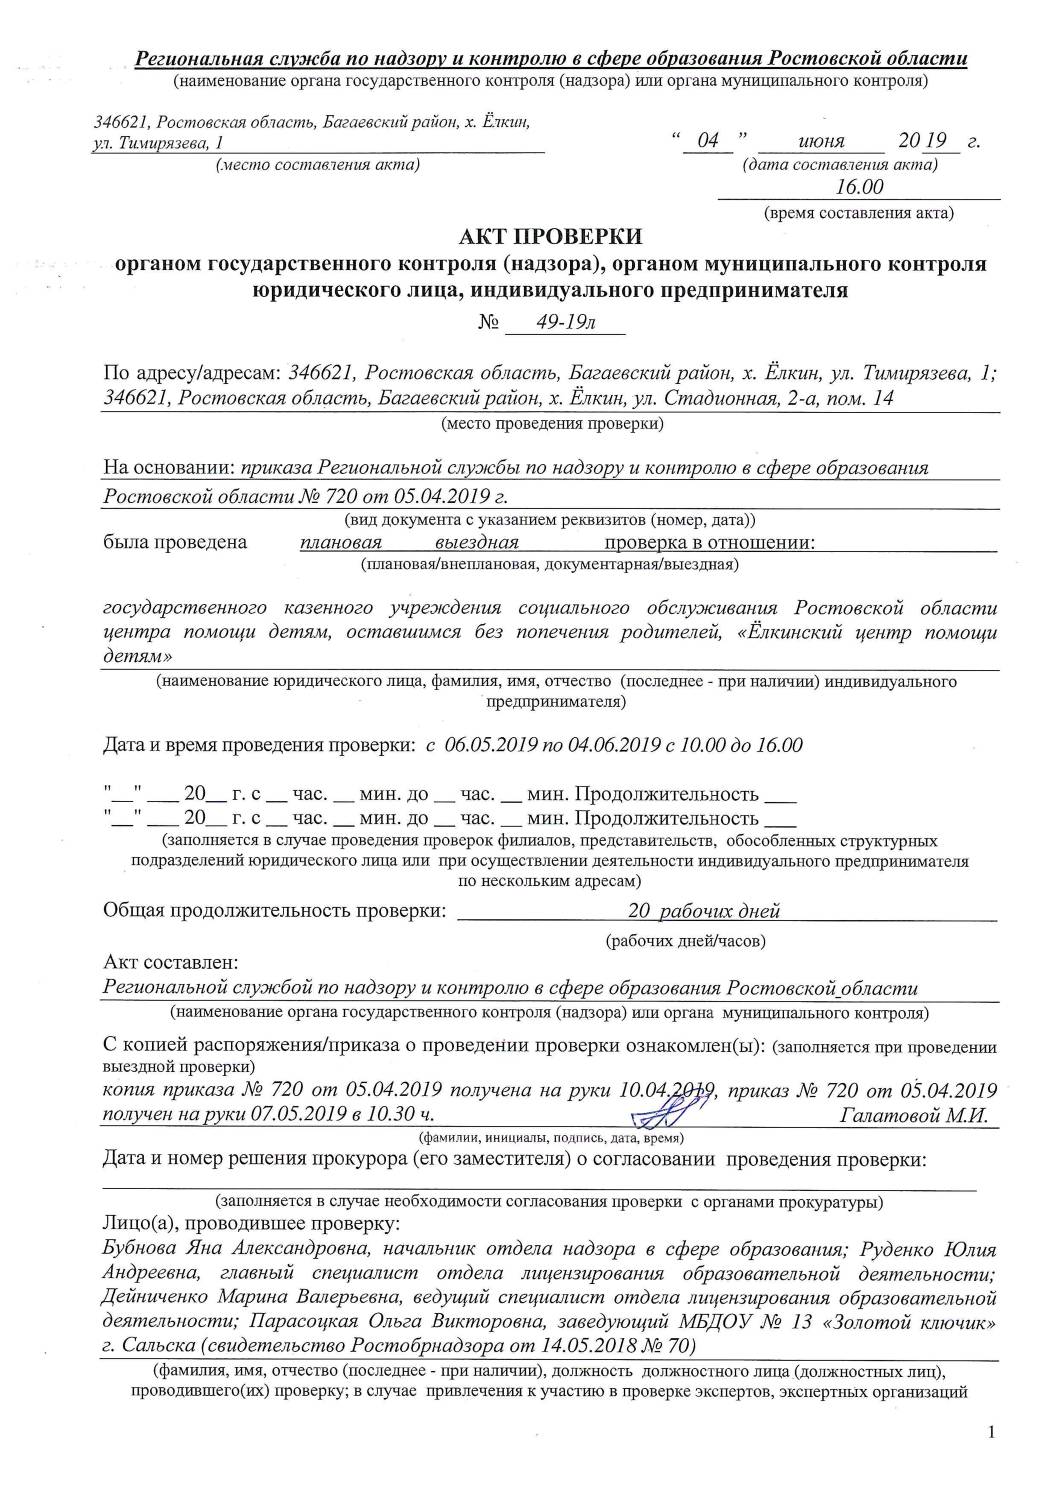 Акт Проверки Рособрнадзор 04.06.2019 год